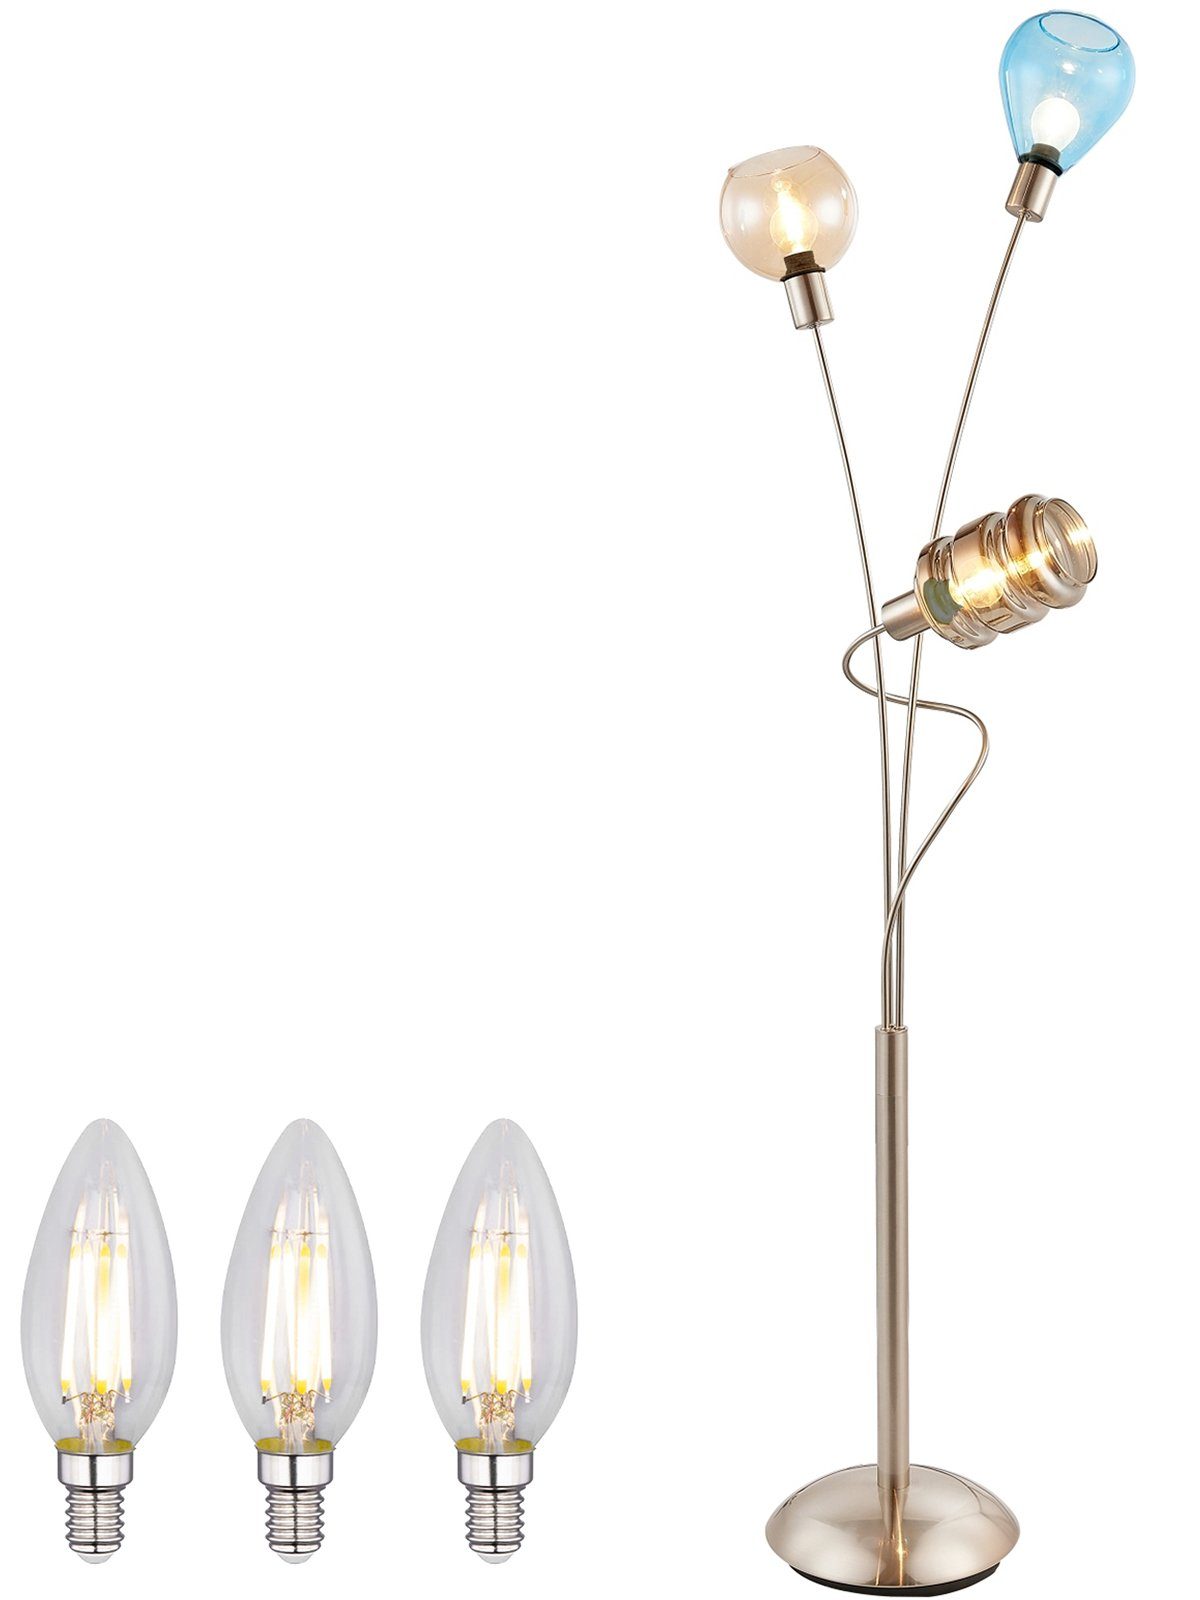 bmf-versand Stehlampe Stehlampe Wohnzimmer Stehleuchte LED Glas bunt Retro  Metall 3 Flammig, LED wechselbar, Warmweiß